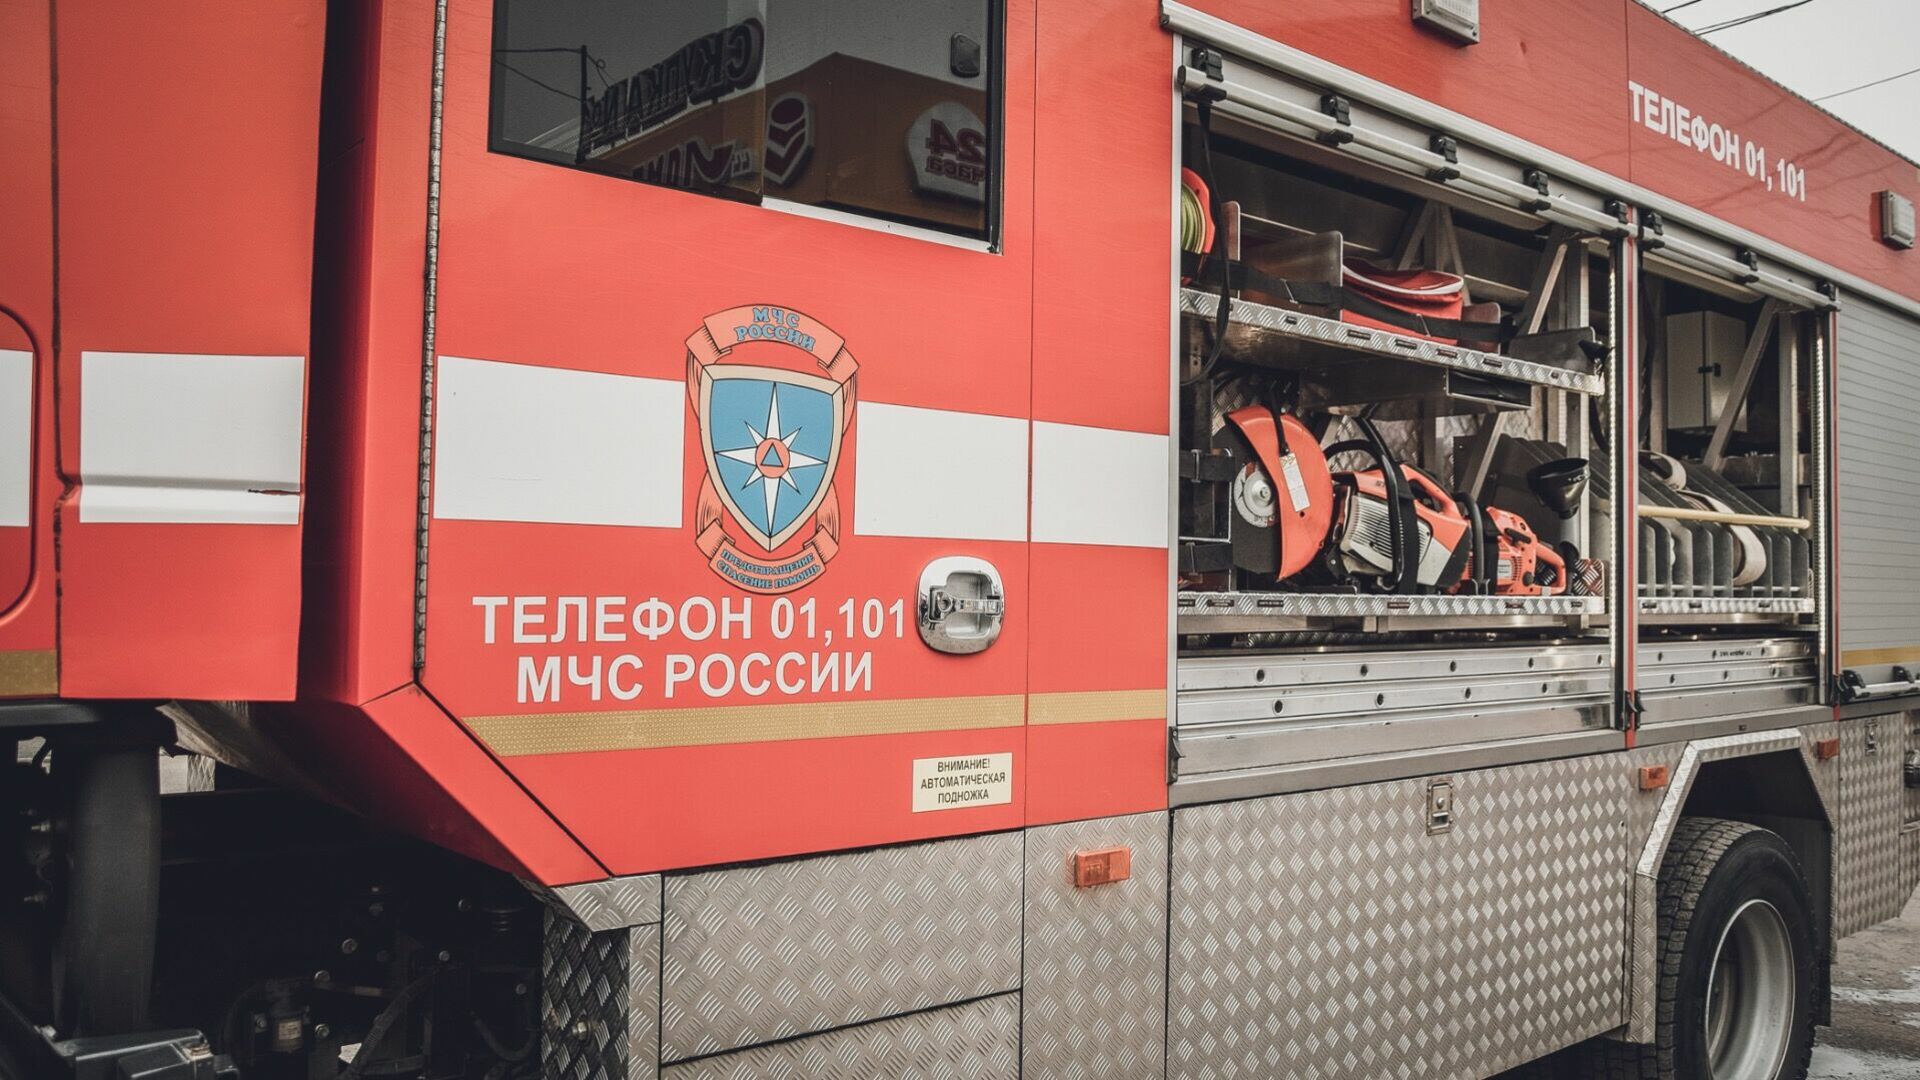 83-летний пенсионер погиб при пожаре в Челябинской области